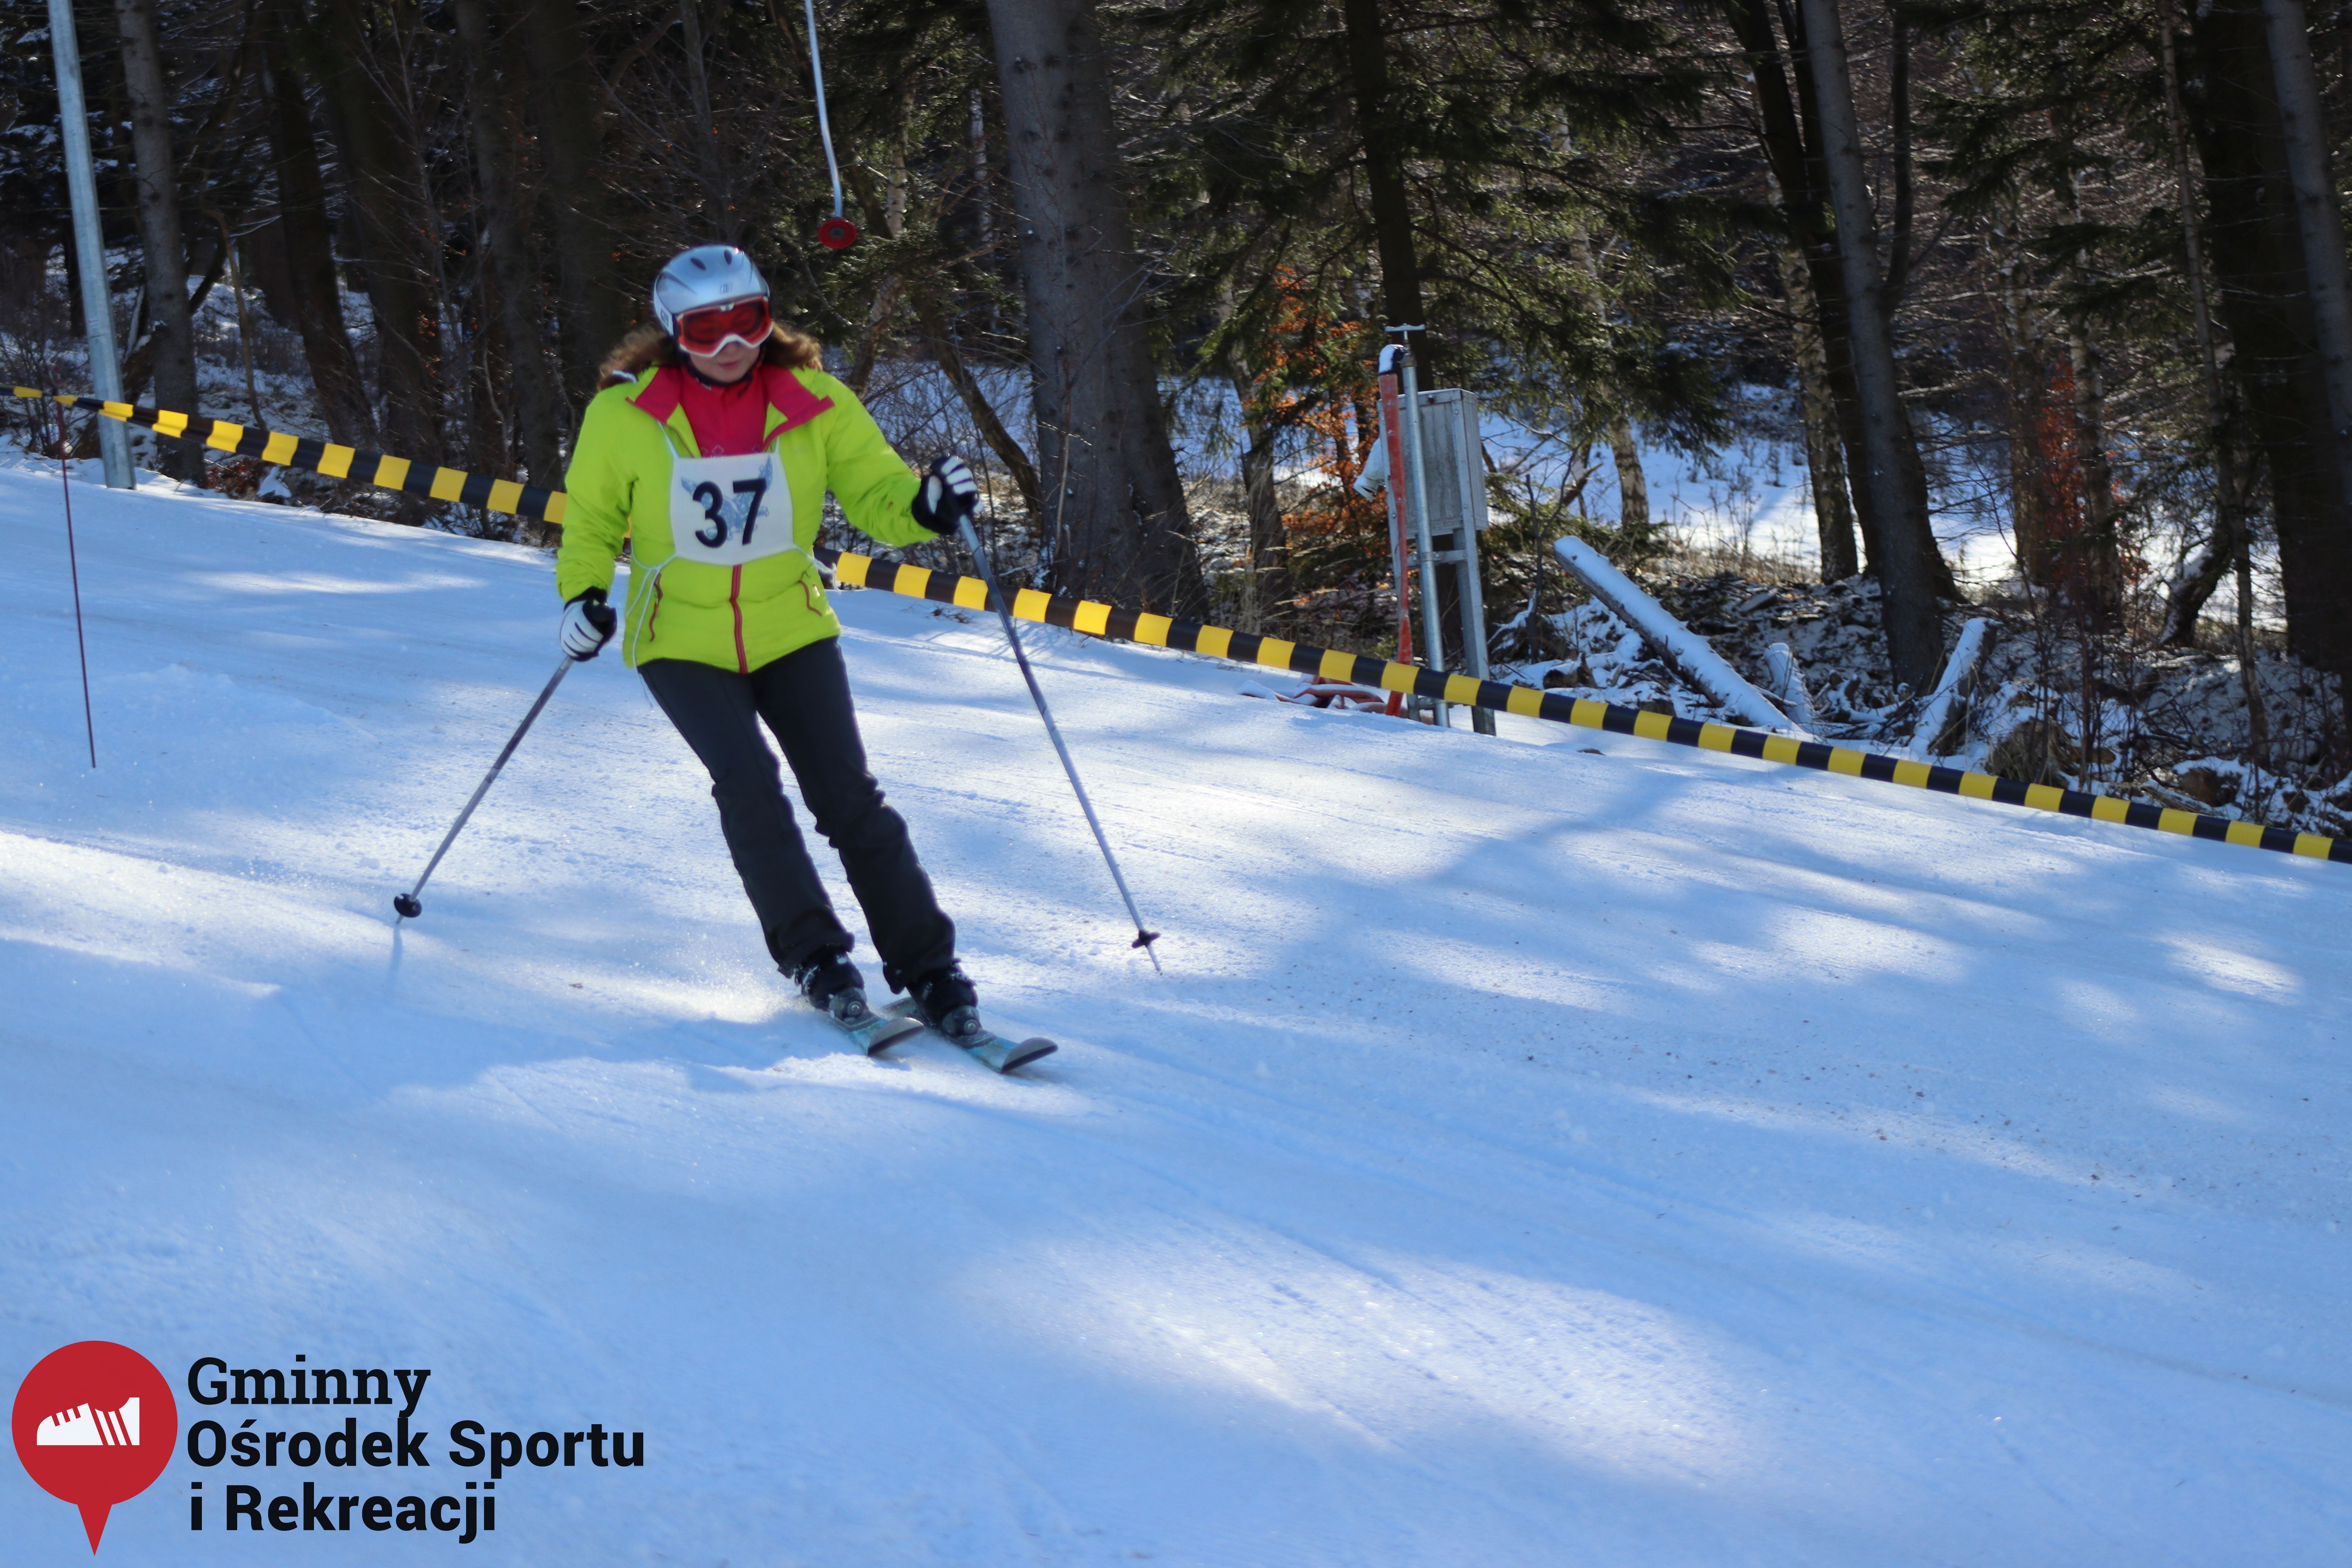 2022.02.12 - 18. Mistrzostwa Gminy Woszakowice w narciarstwie055.jpg - 2,06 MB